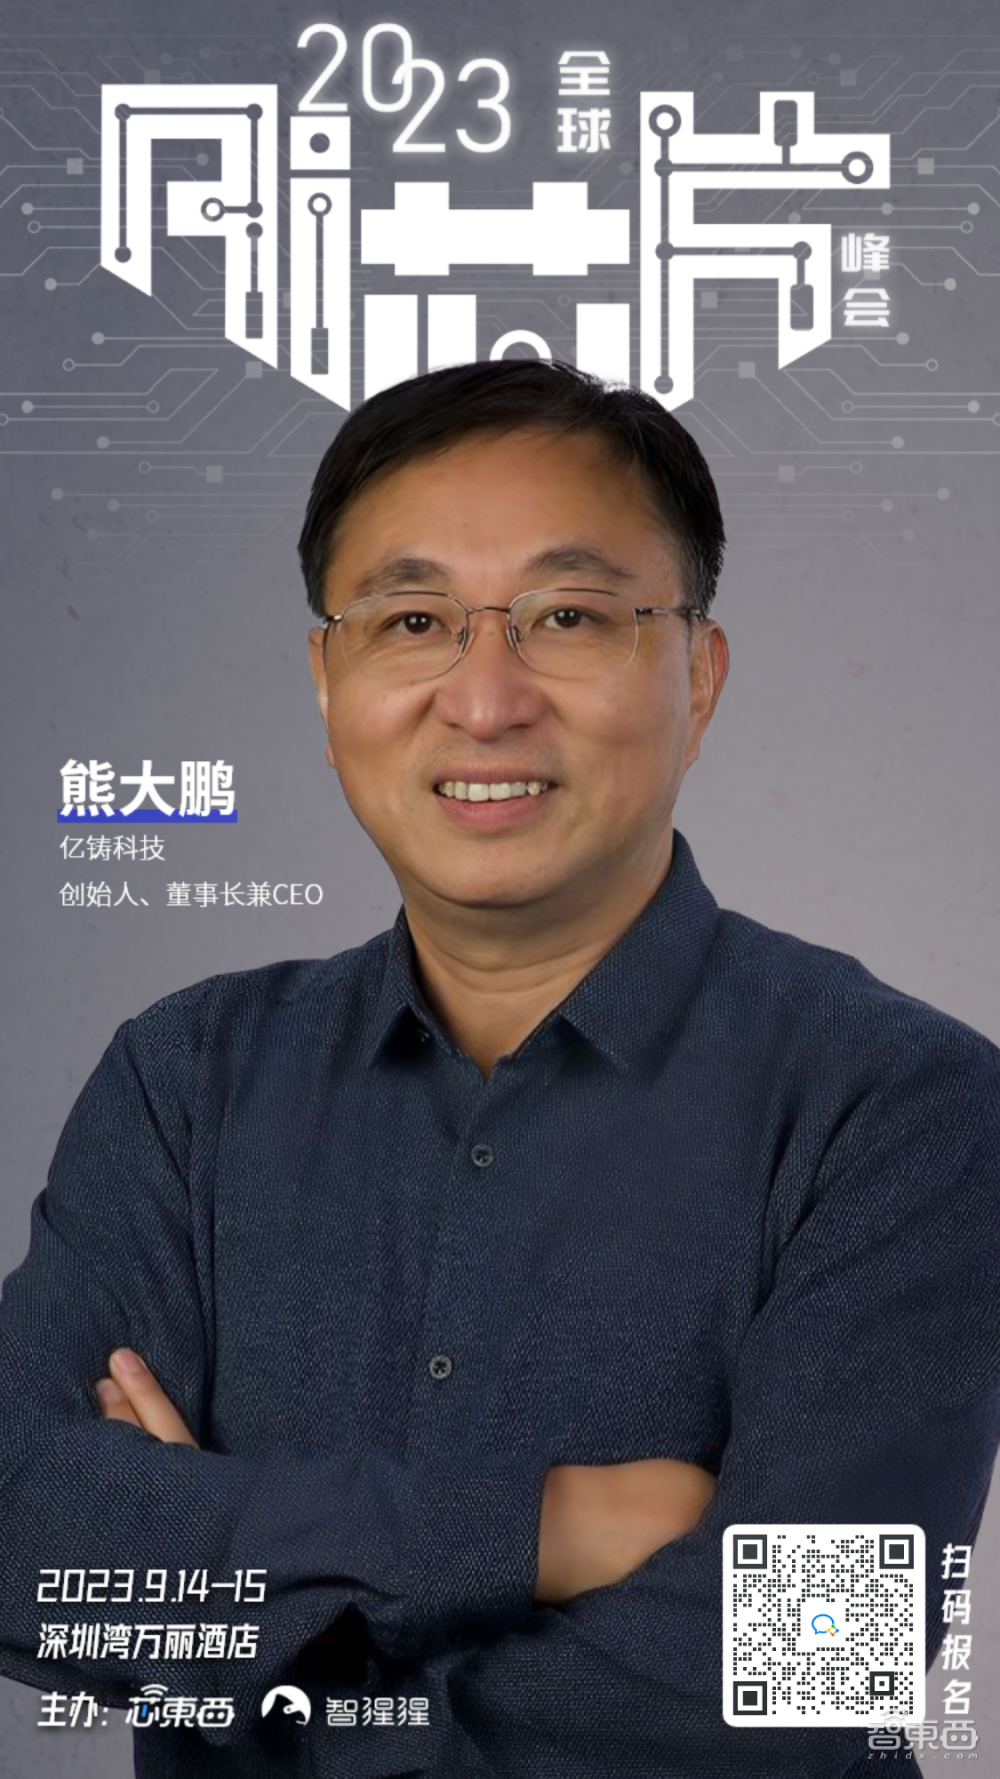 NVIDIA上海交大领衔，存算一体团队来了！全球AI芯片峰会三批嘉宾揭晓